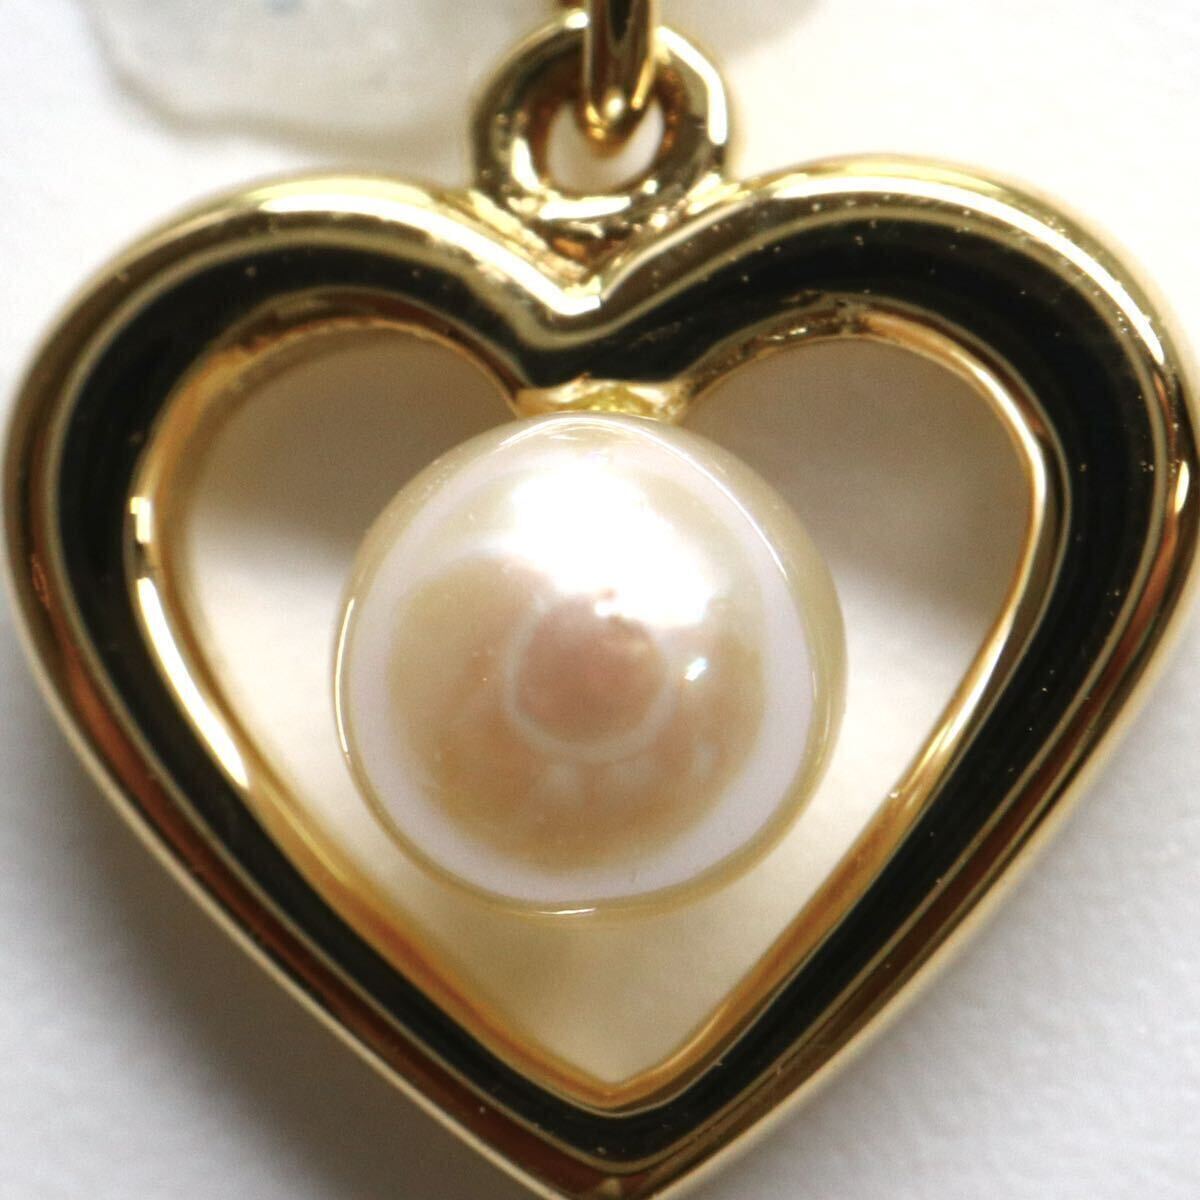 MIKIMOTO(ミキモト)箱付き!!テリ良し!!《K18 アコヤ本真珠ペンダントトップ》M 約0.7g pendant パール pearl jewelry ジュエリー DF6/DI6の画像4